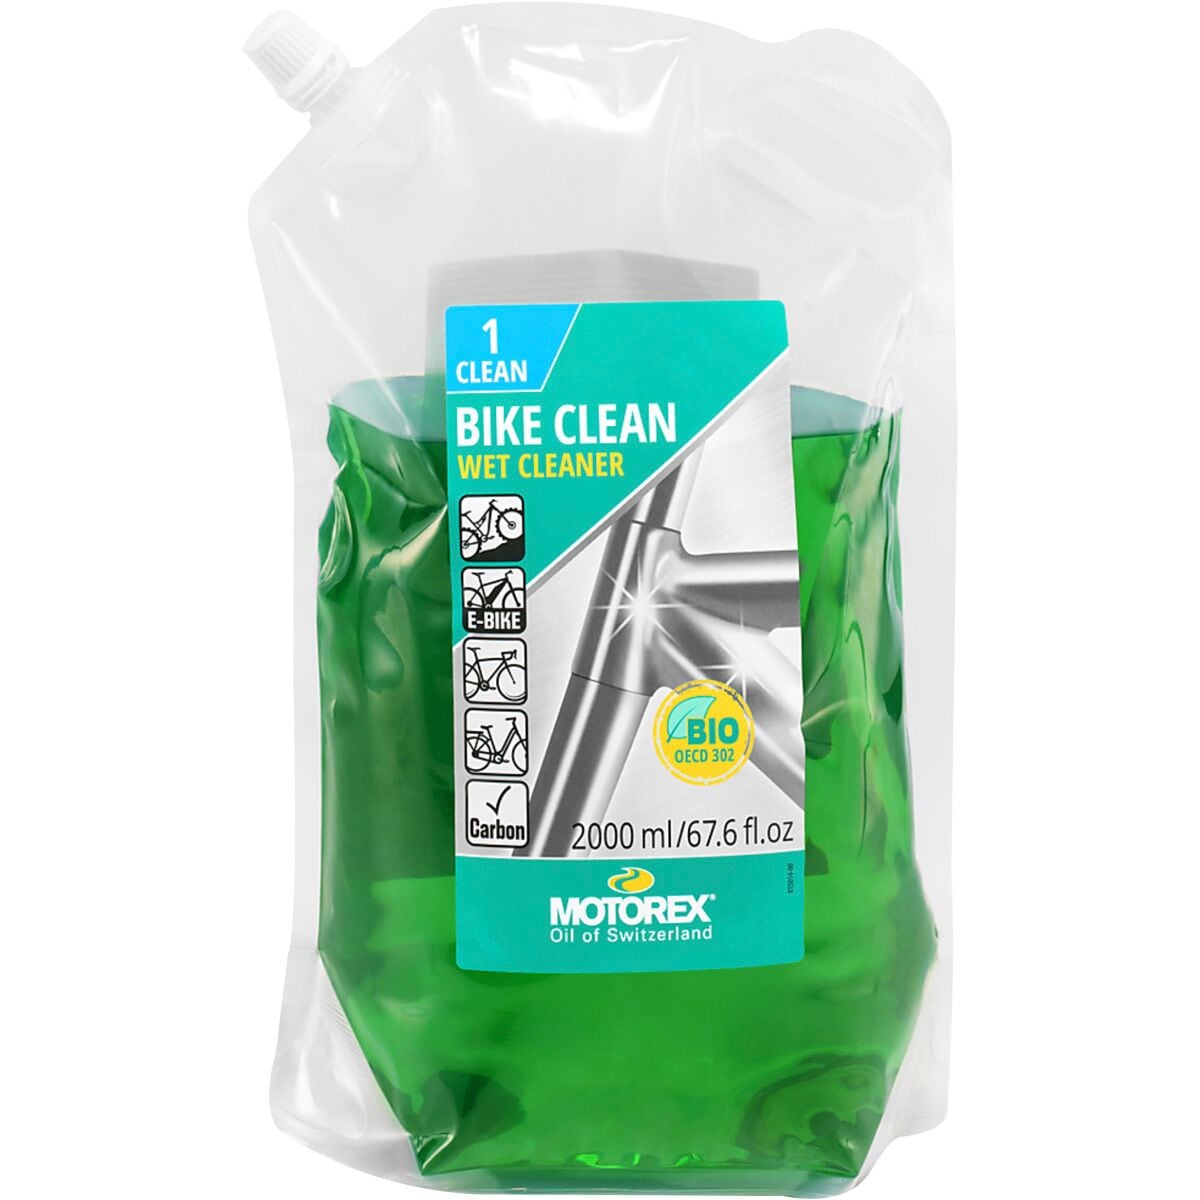 цена Заправка для очистки велосипеда Motorex